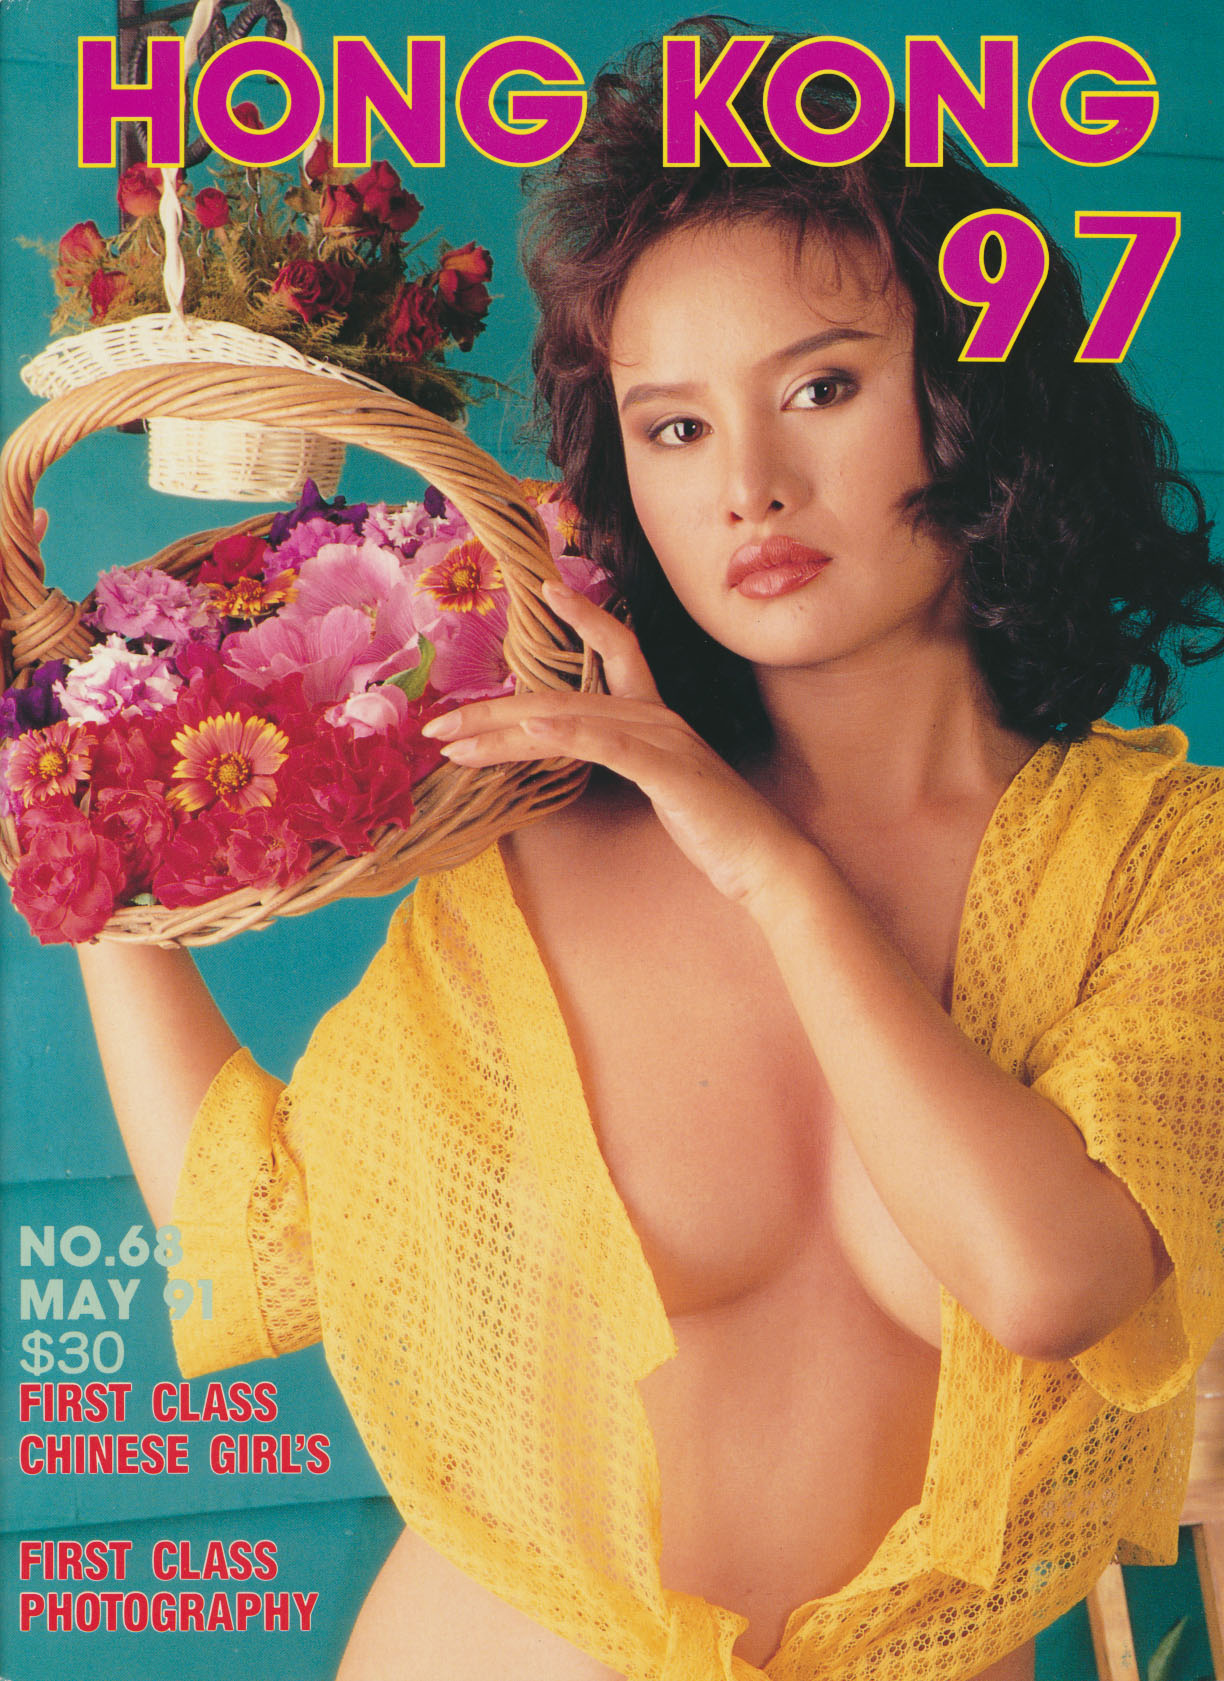 Hong Kong 97 # 68, May 1991 magazine back issue Hong Kong 97 magizine back copy 